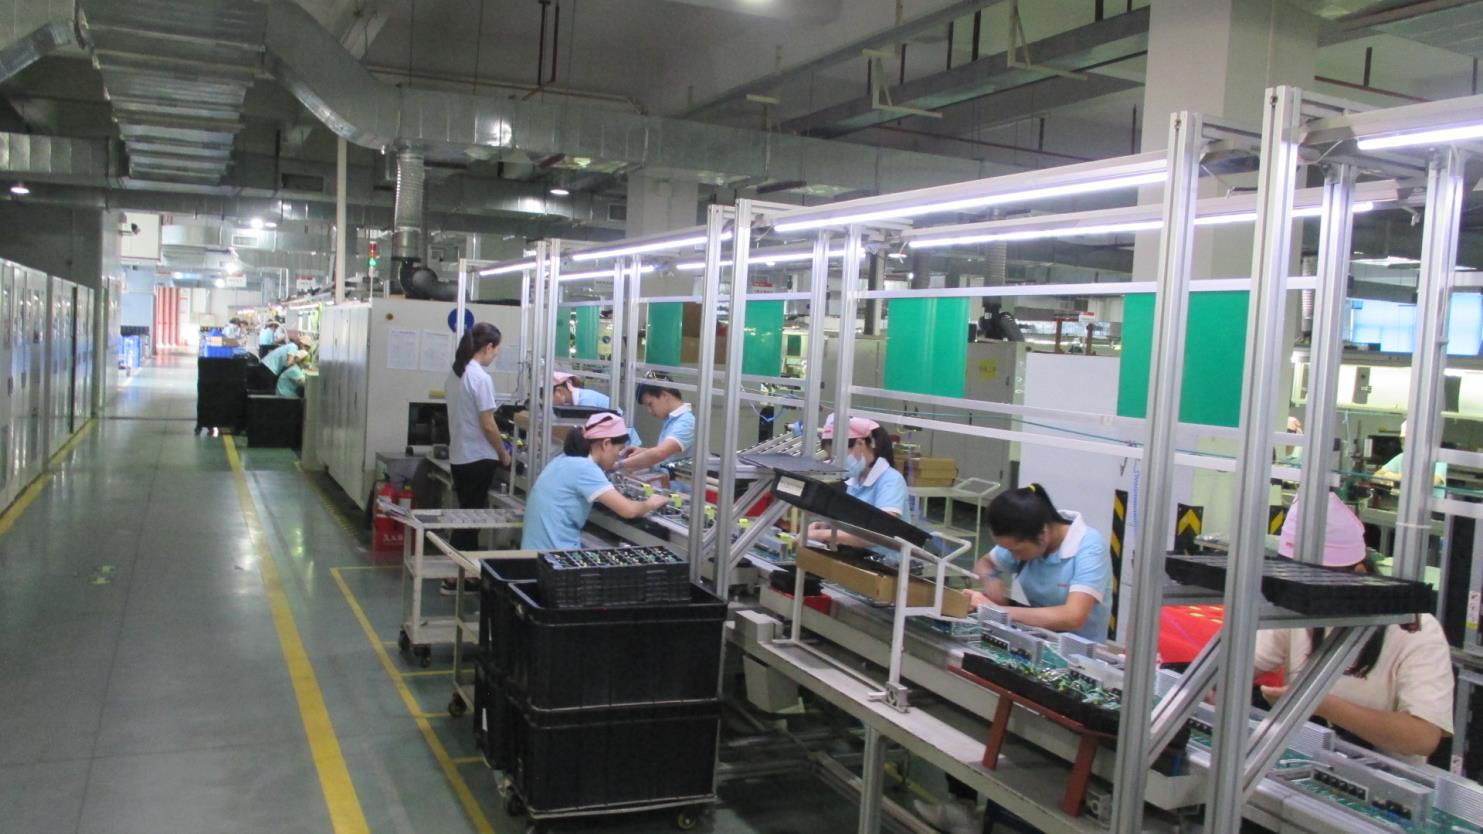 Shenzhen Zhongguanda Technology Co., Ltd. factory production line